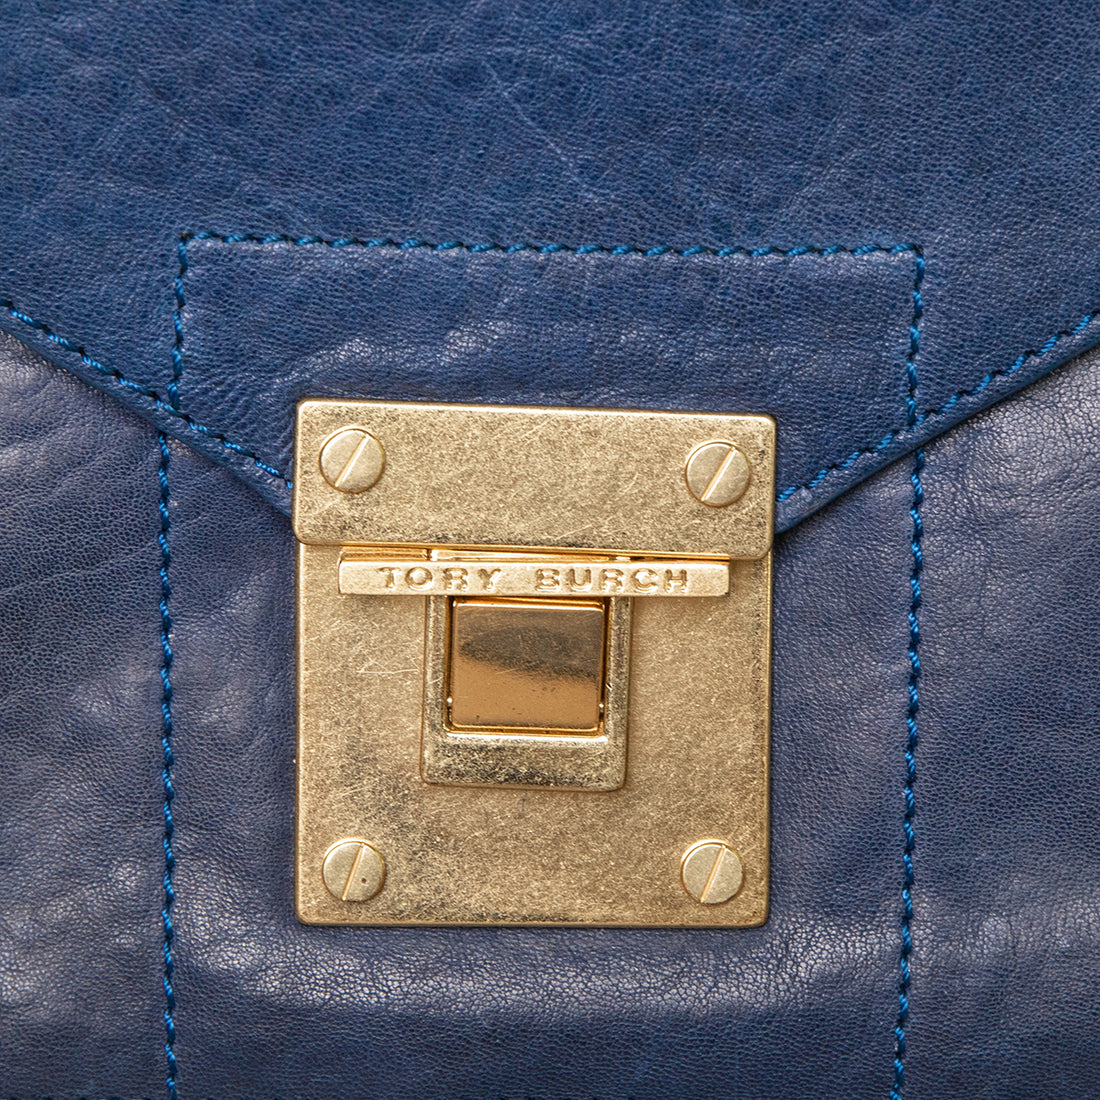 Tory Burch shoulder bag in pochette shape